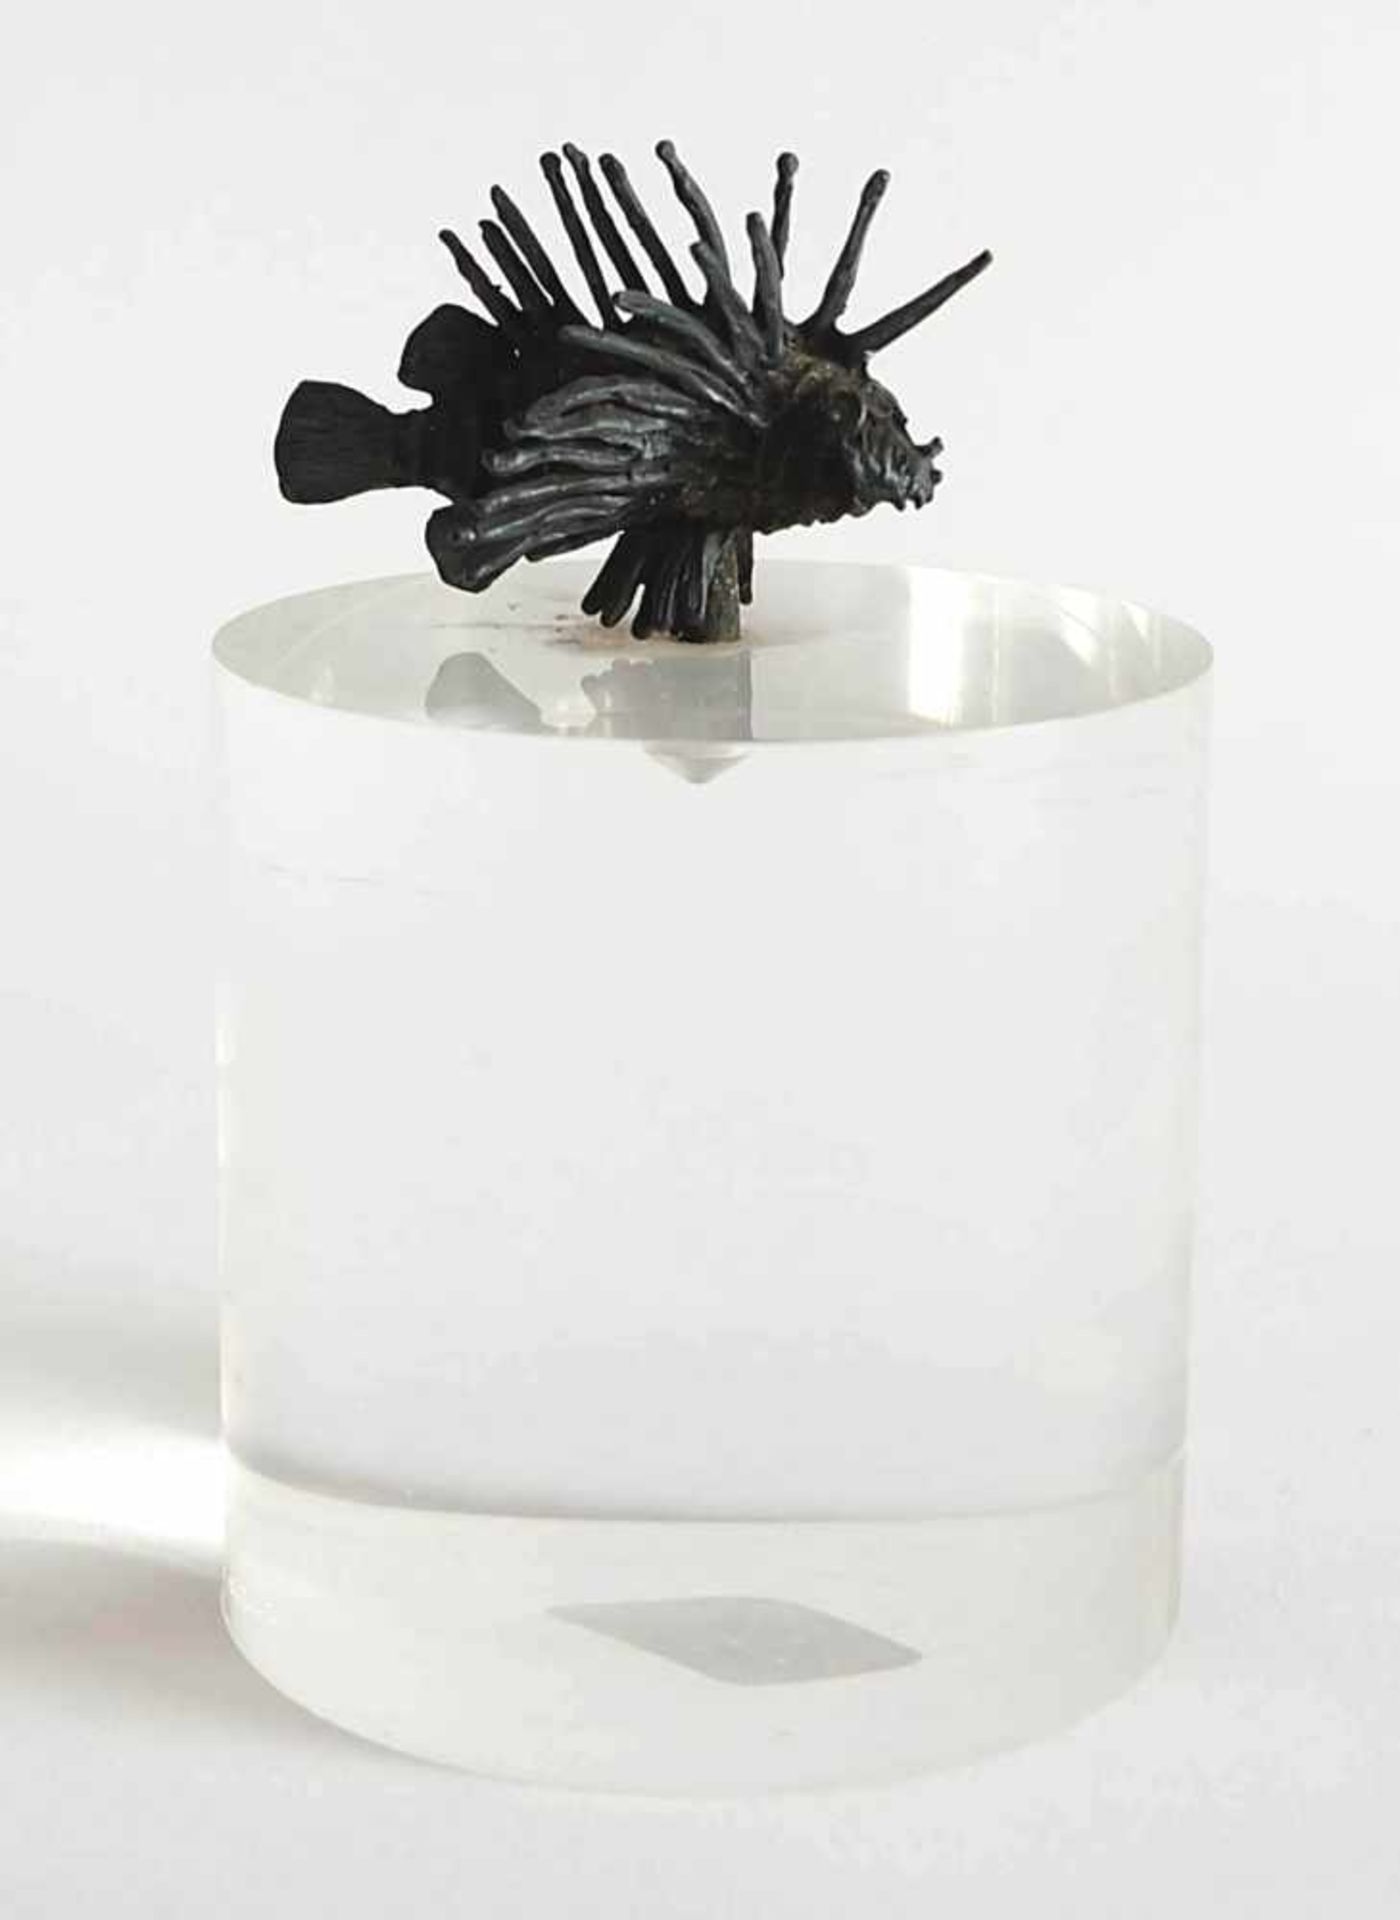 SKULPTUR, Bronze, dunkel patiniert, Miniatur eines Feuerfisches, runder Acrylglassockel, H über